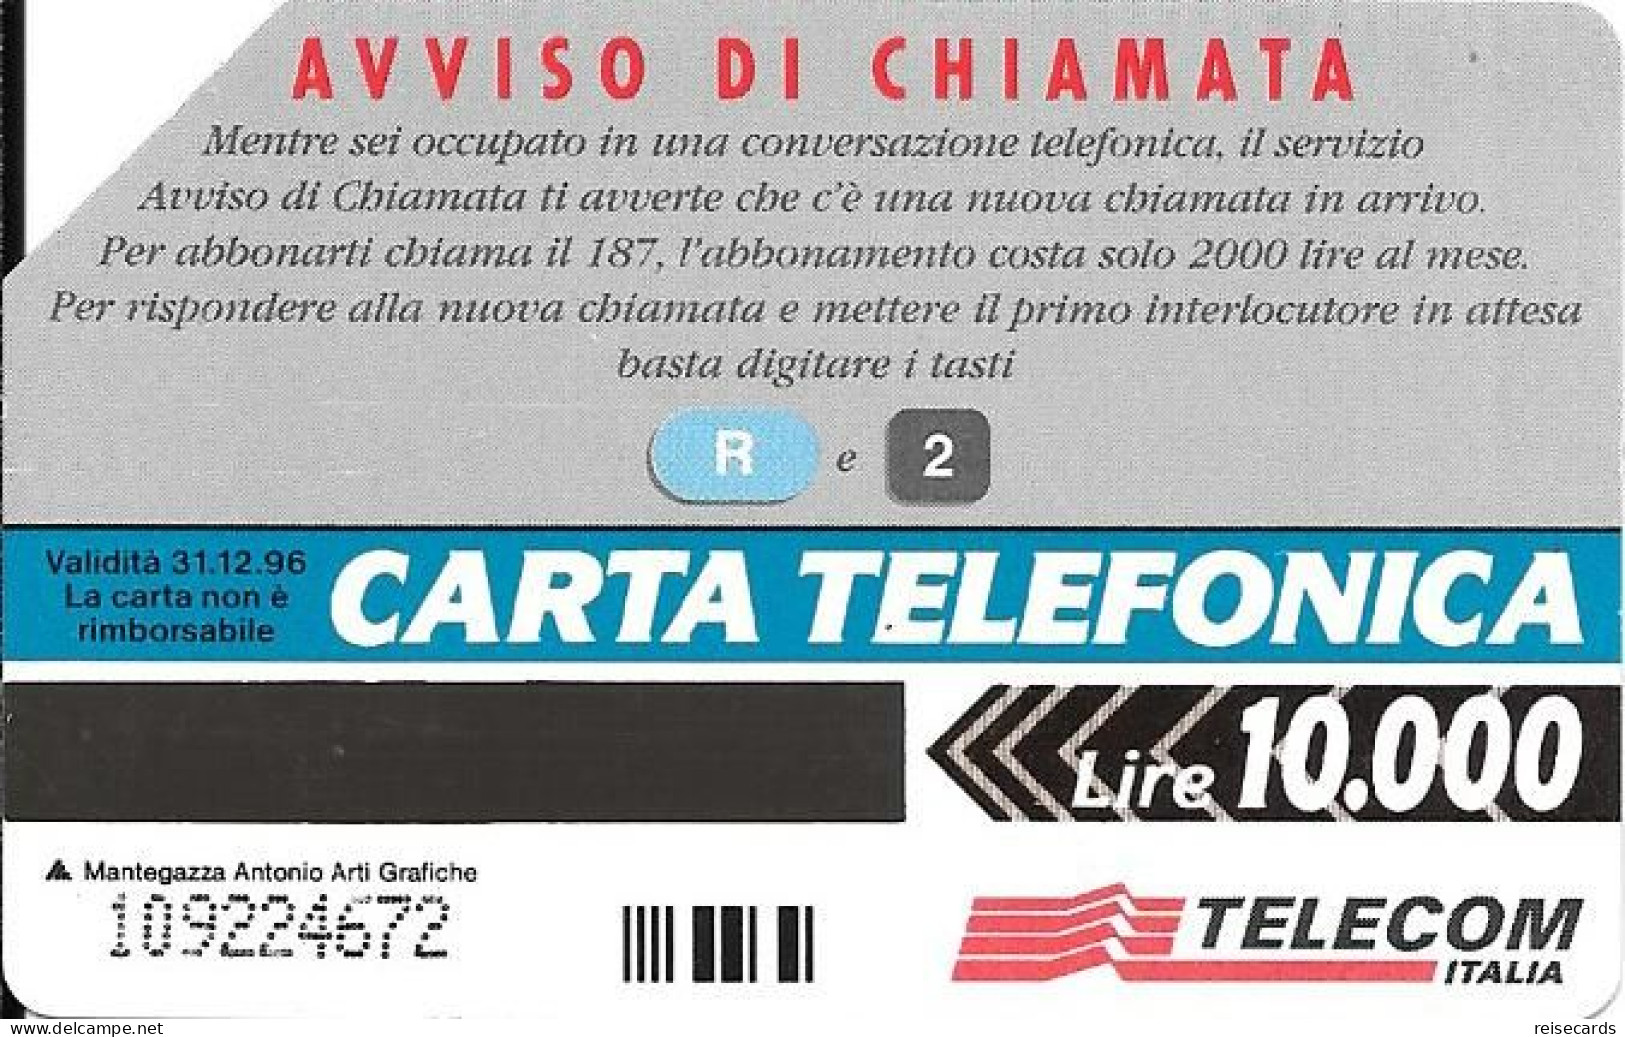 Italy: Telecom Italia - R2 Aviso Di Chiamata - Öff. Werbe-TK